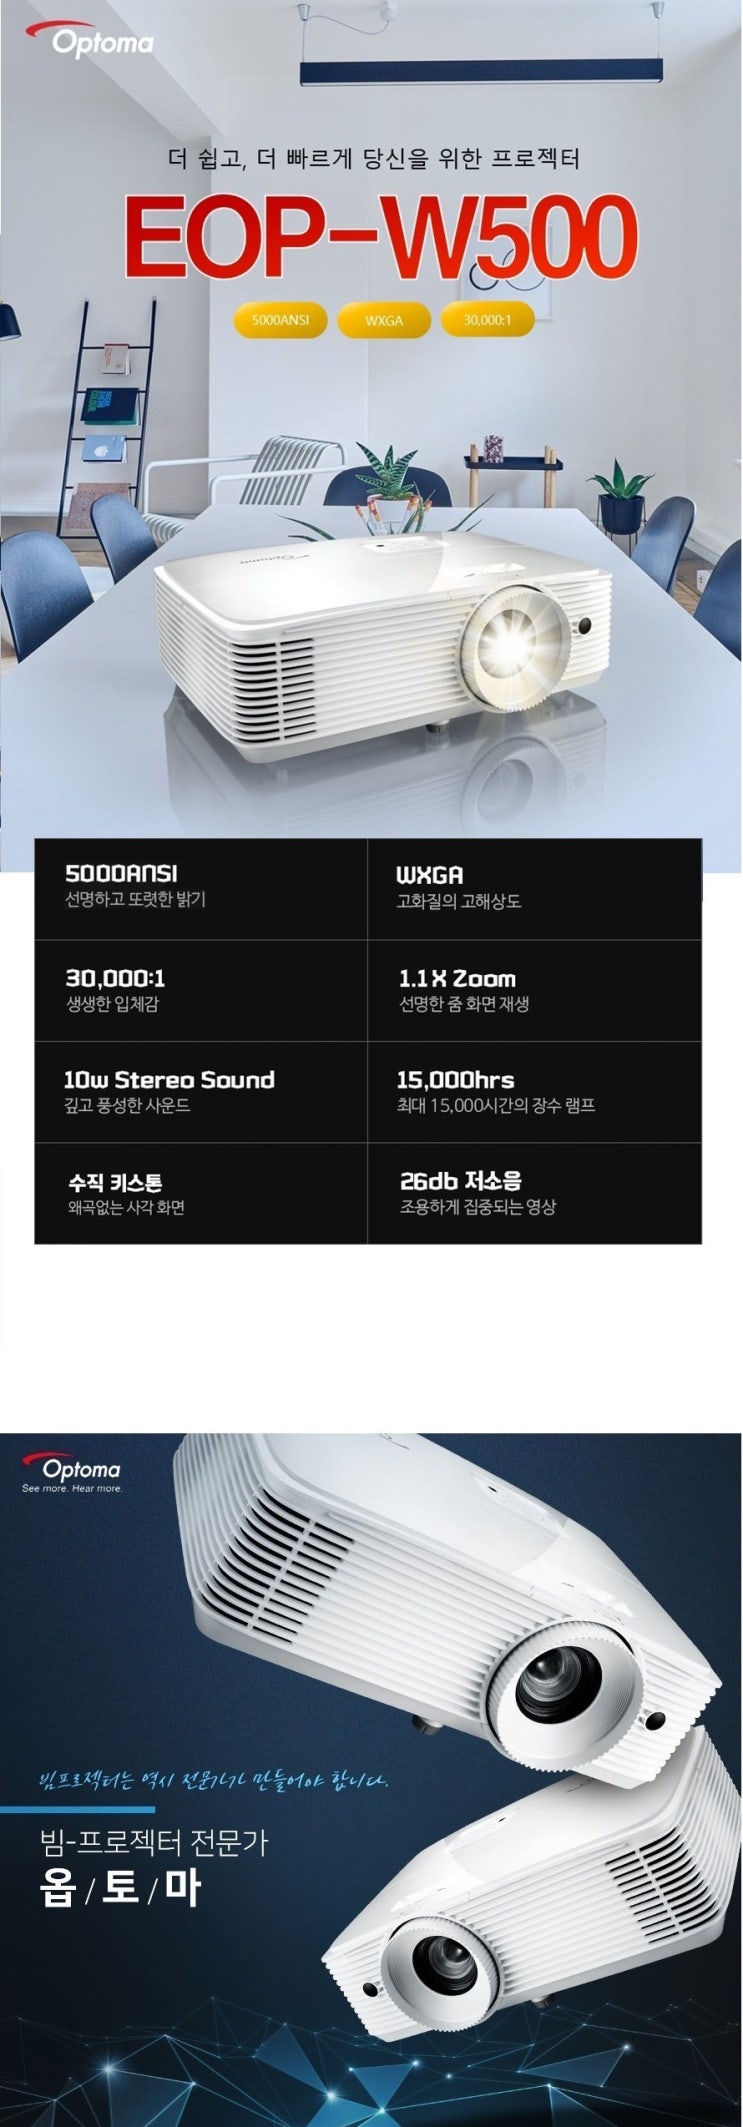 옵토마 EOP-W500 빔프로젝터 특가판매/ 투사거리표